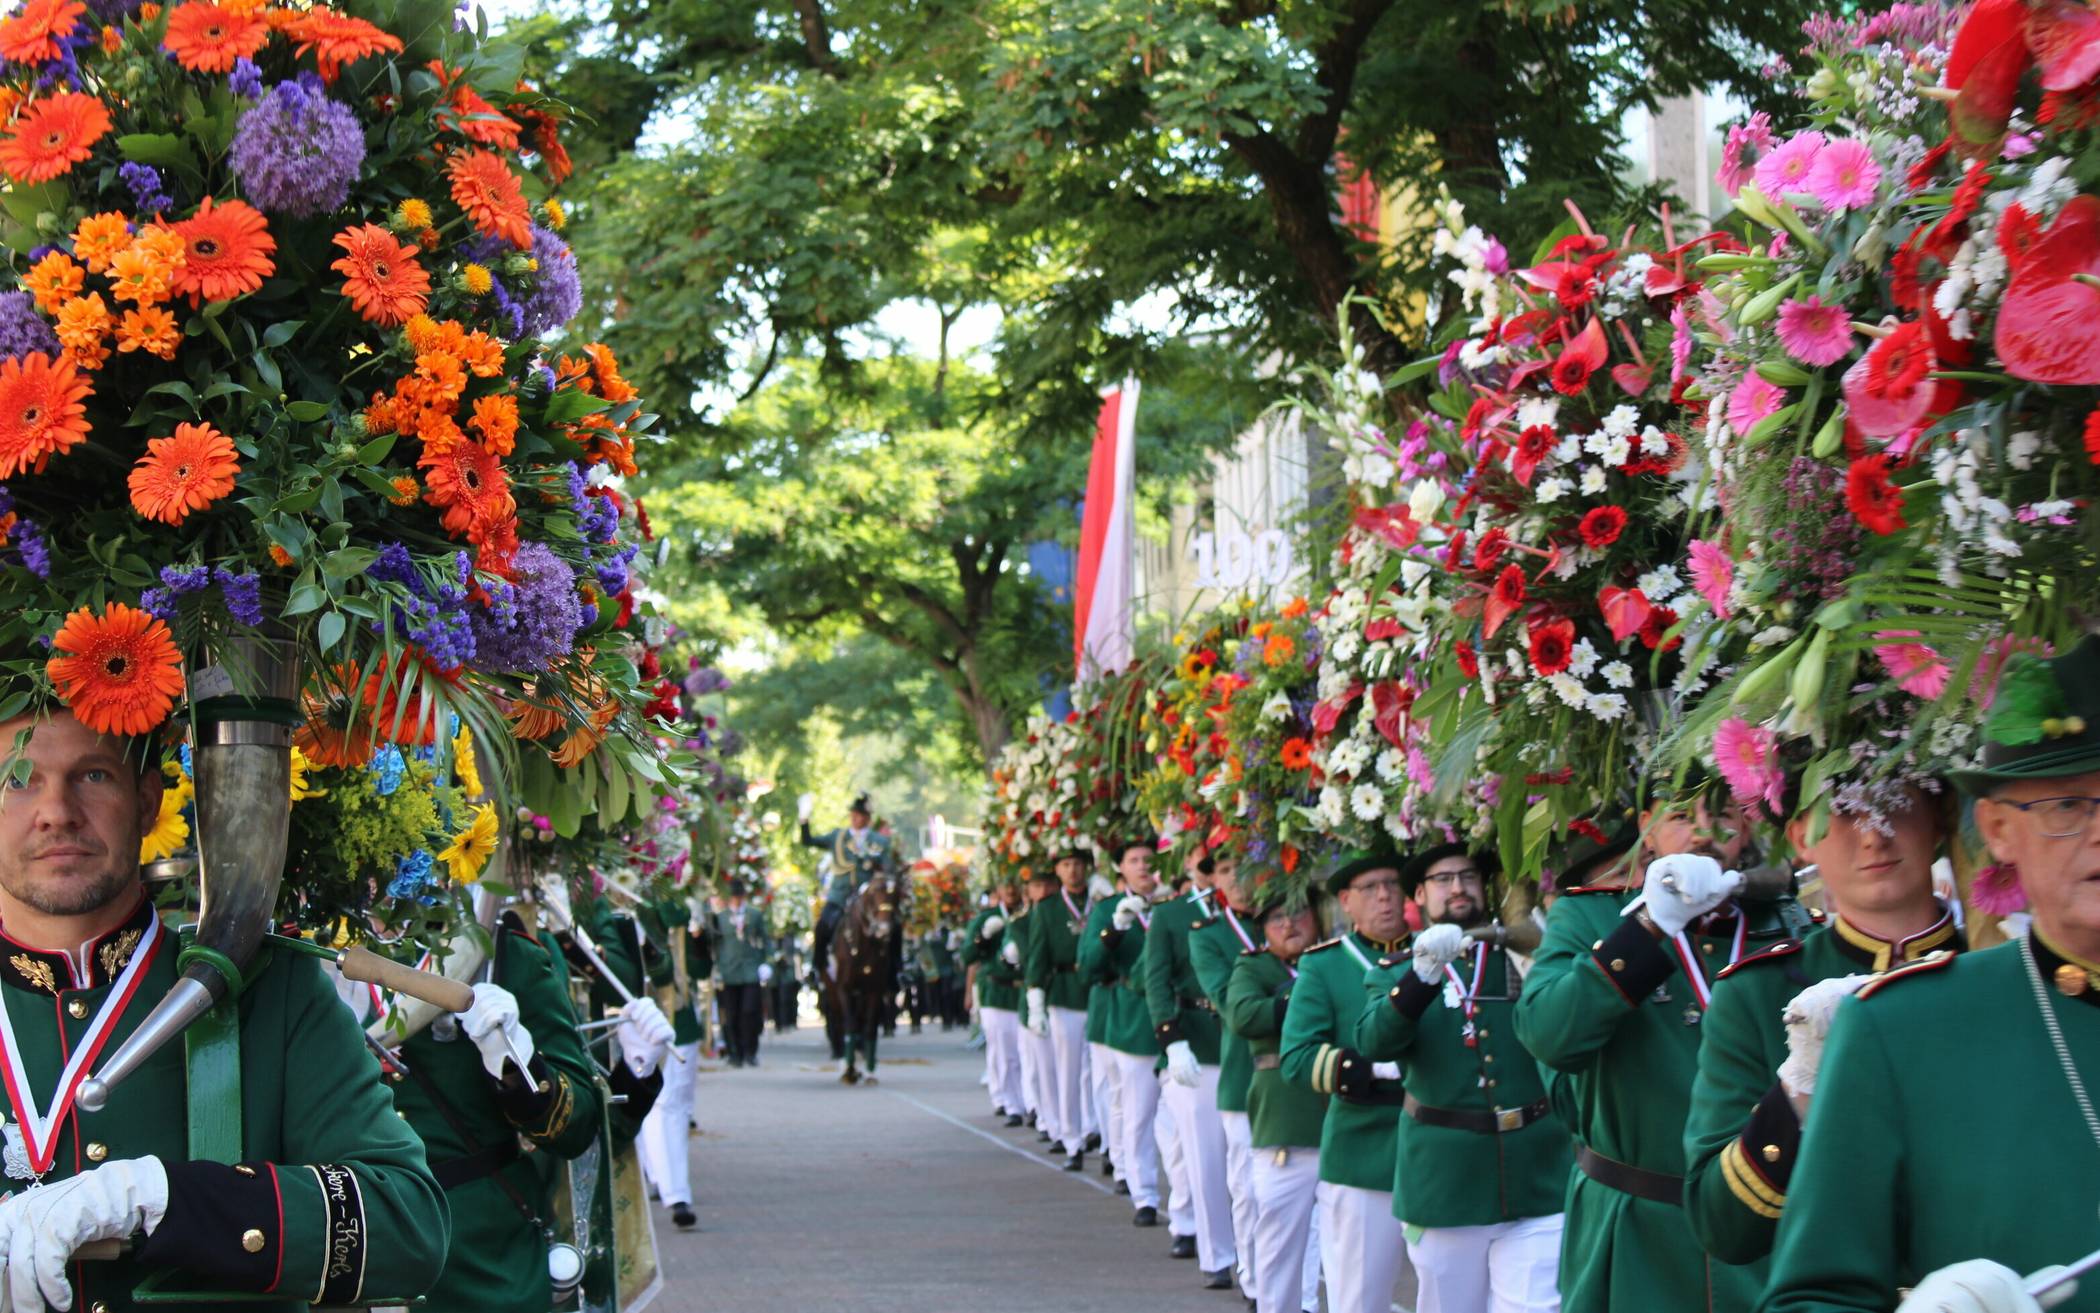  Der Aufmarsch der Hönesse mit ihren prachtvollen Blumenhörnern ist einer der Höhepunkte der Königsparade am Schützenfest-Sonntag.  